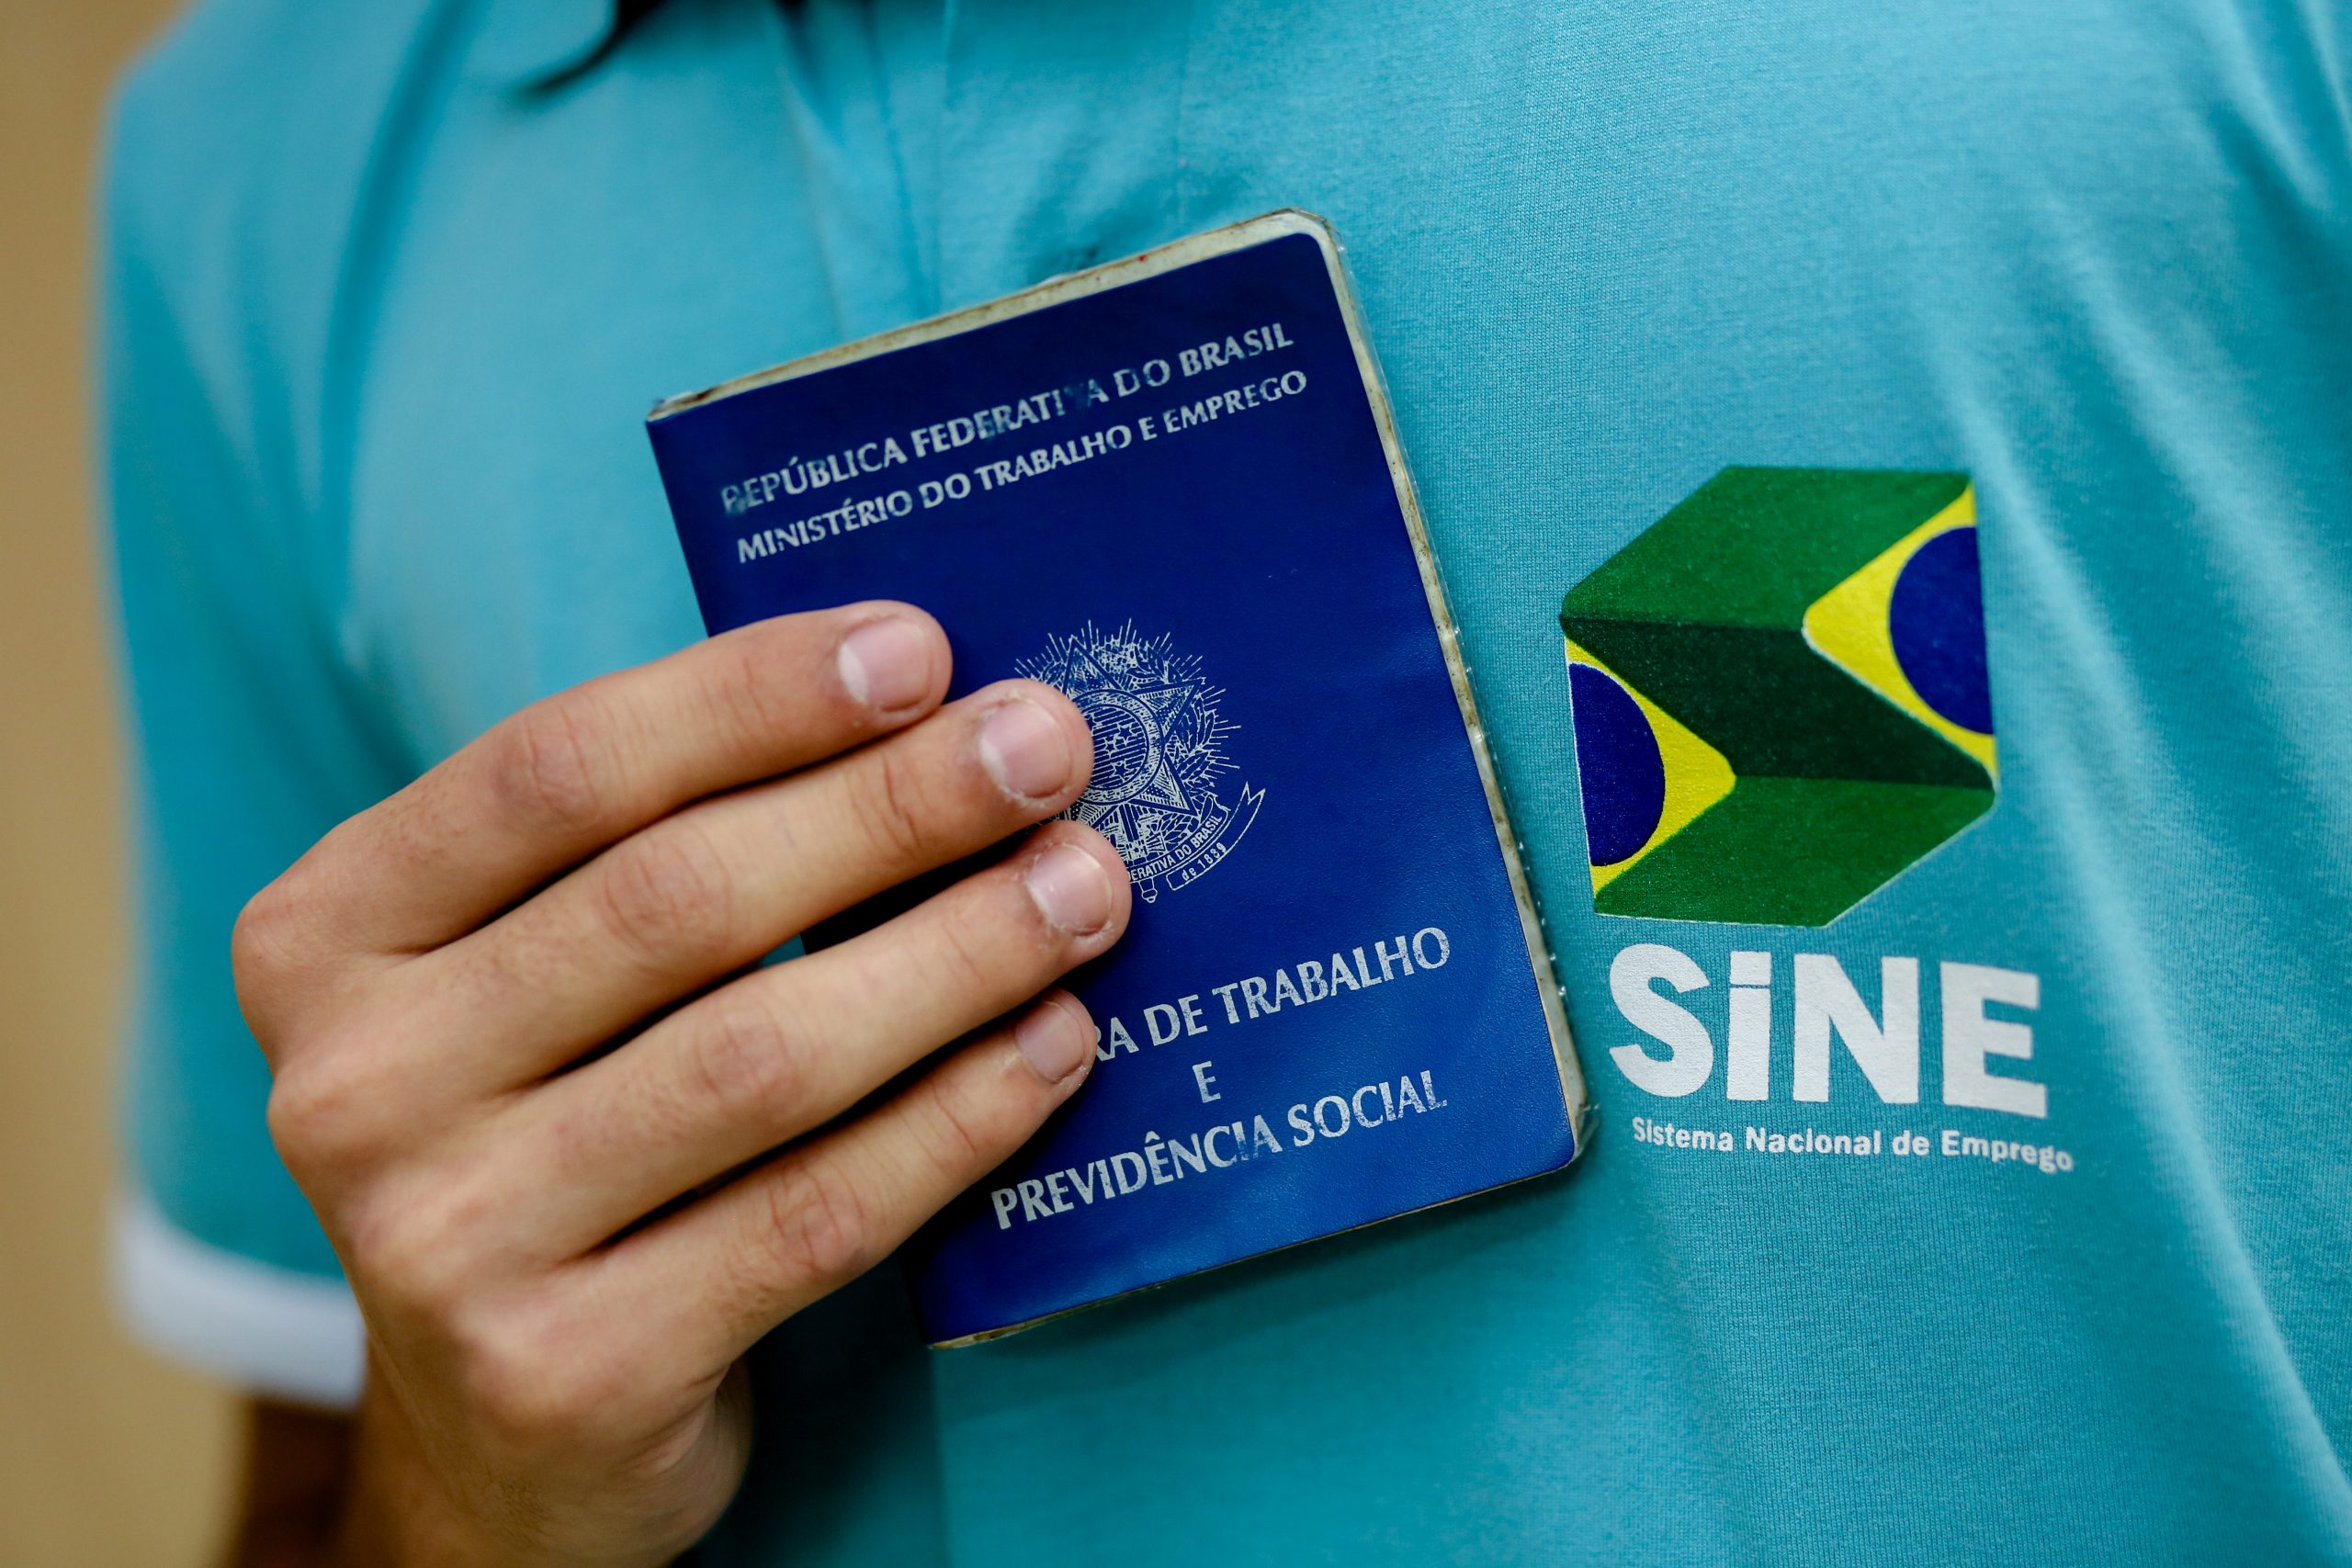 Vaga para digitador online - últimas vagas em Brasil